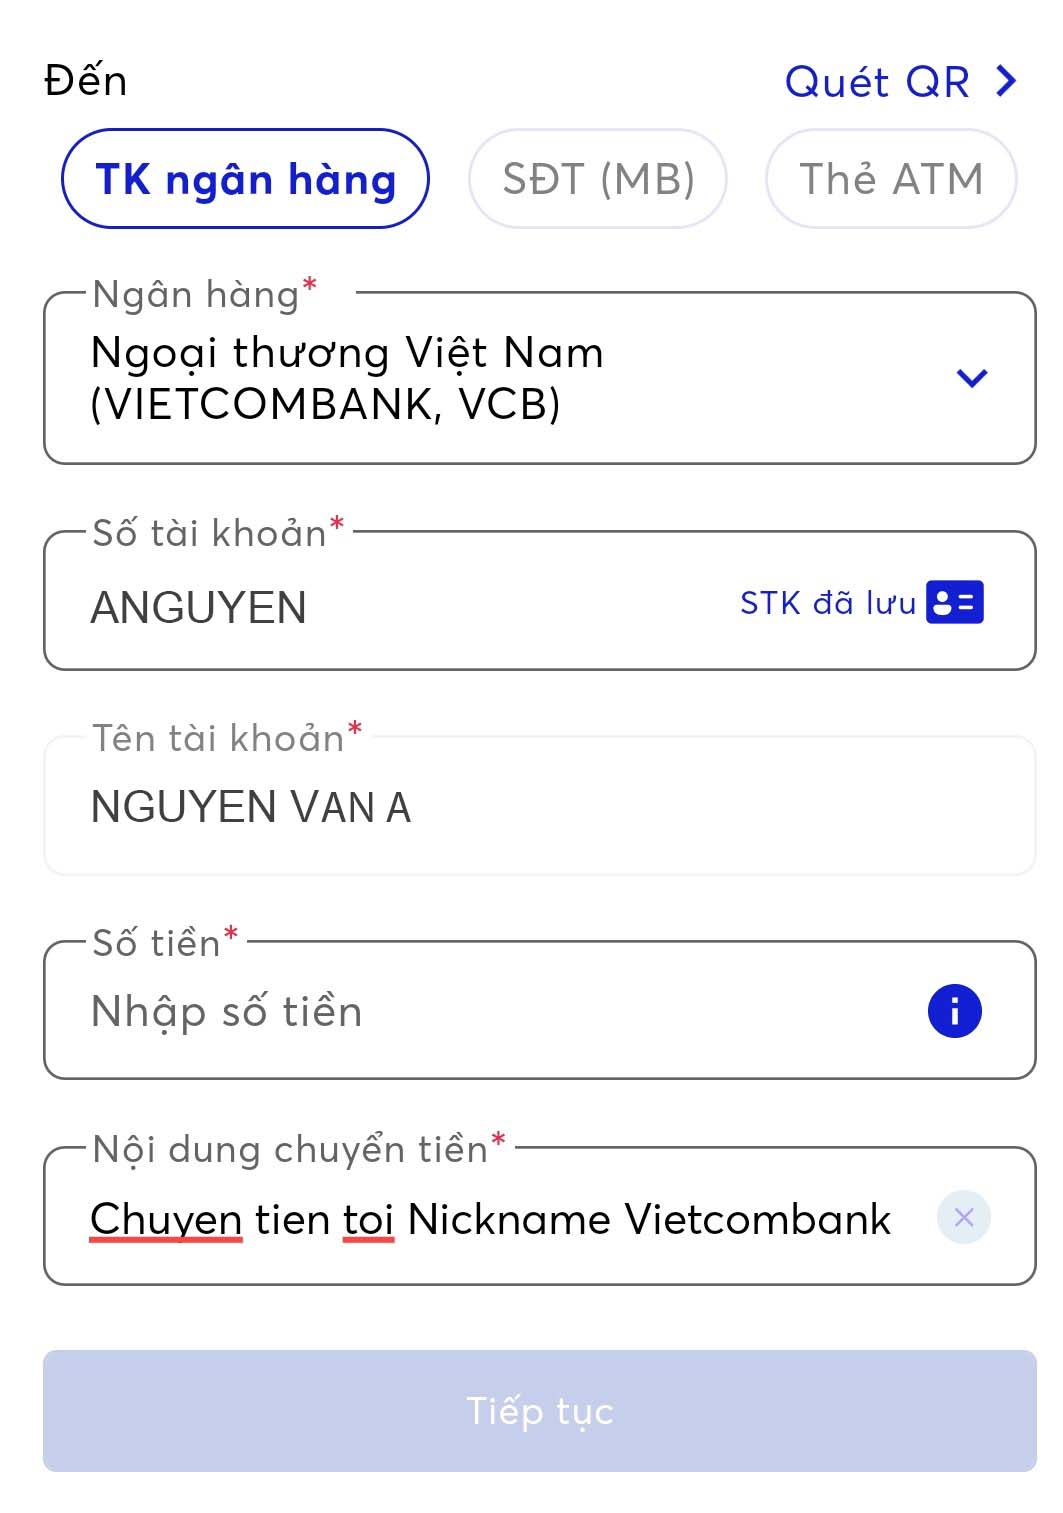 Chuyển khoản tại Vietcombank sẽ giúp bạn tiết kiệm thời gian và an toàn hơn trong giao dịch. Xem hình ảnh liên quan để hiểu rõ hơn về cách thức và các lợi ích khi chuyển khoản tại Vietcombank nhé!